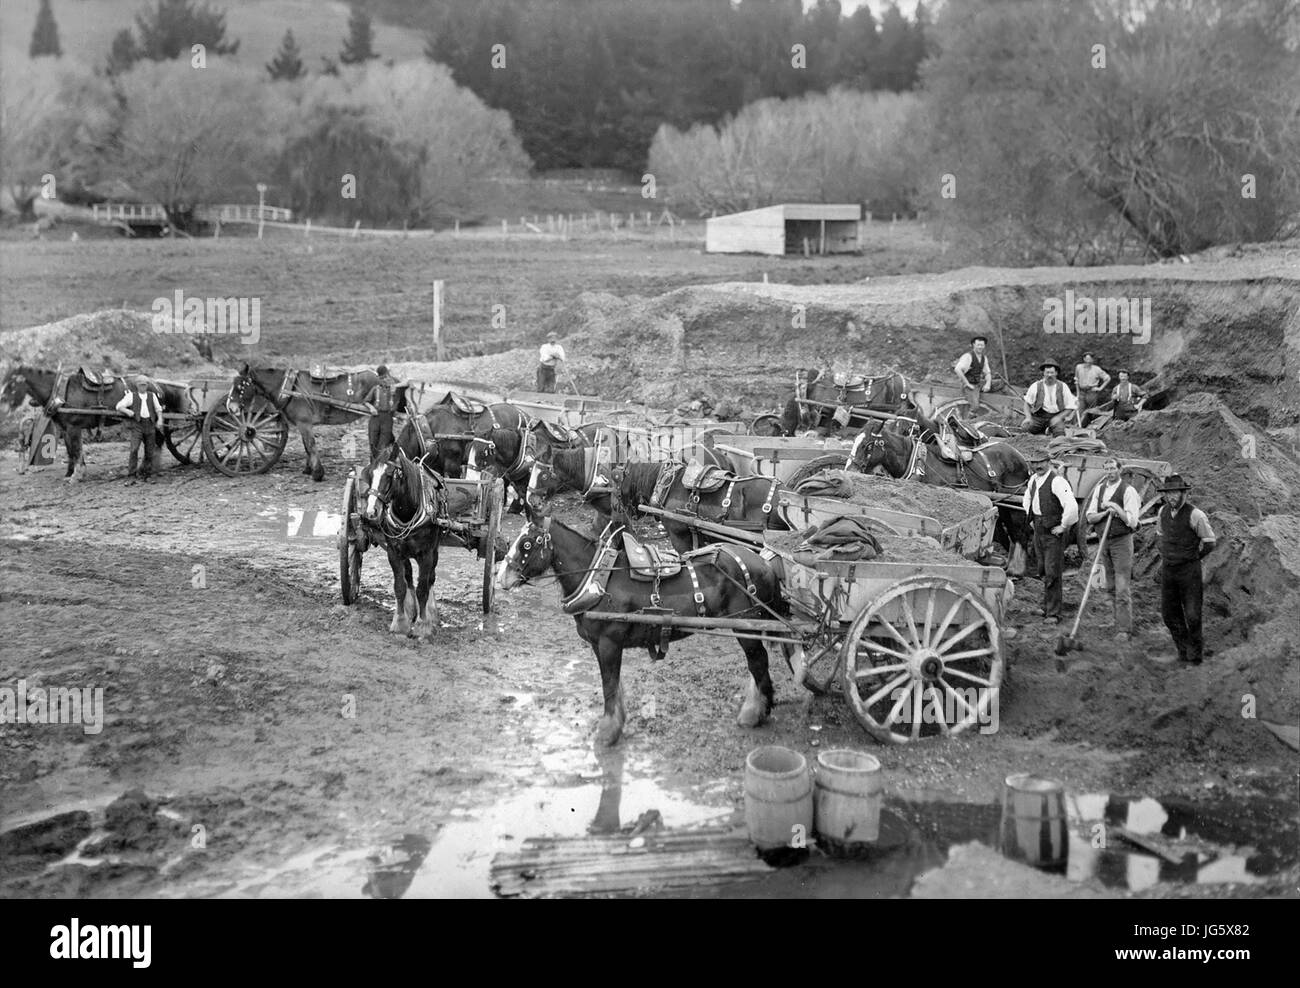 Christchurch, Nouvelle-Zélande - 1890 : Smart, fosse de bardeaux avec les travailleurs, chevaux de trait et Drays à Sydenham, Christchurch. Banque D'Images